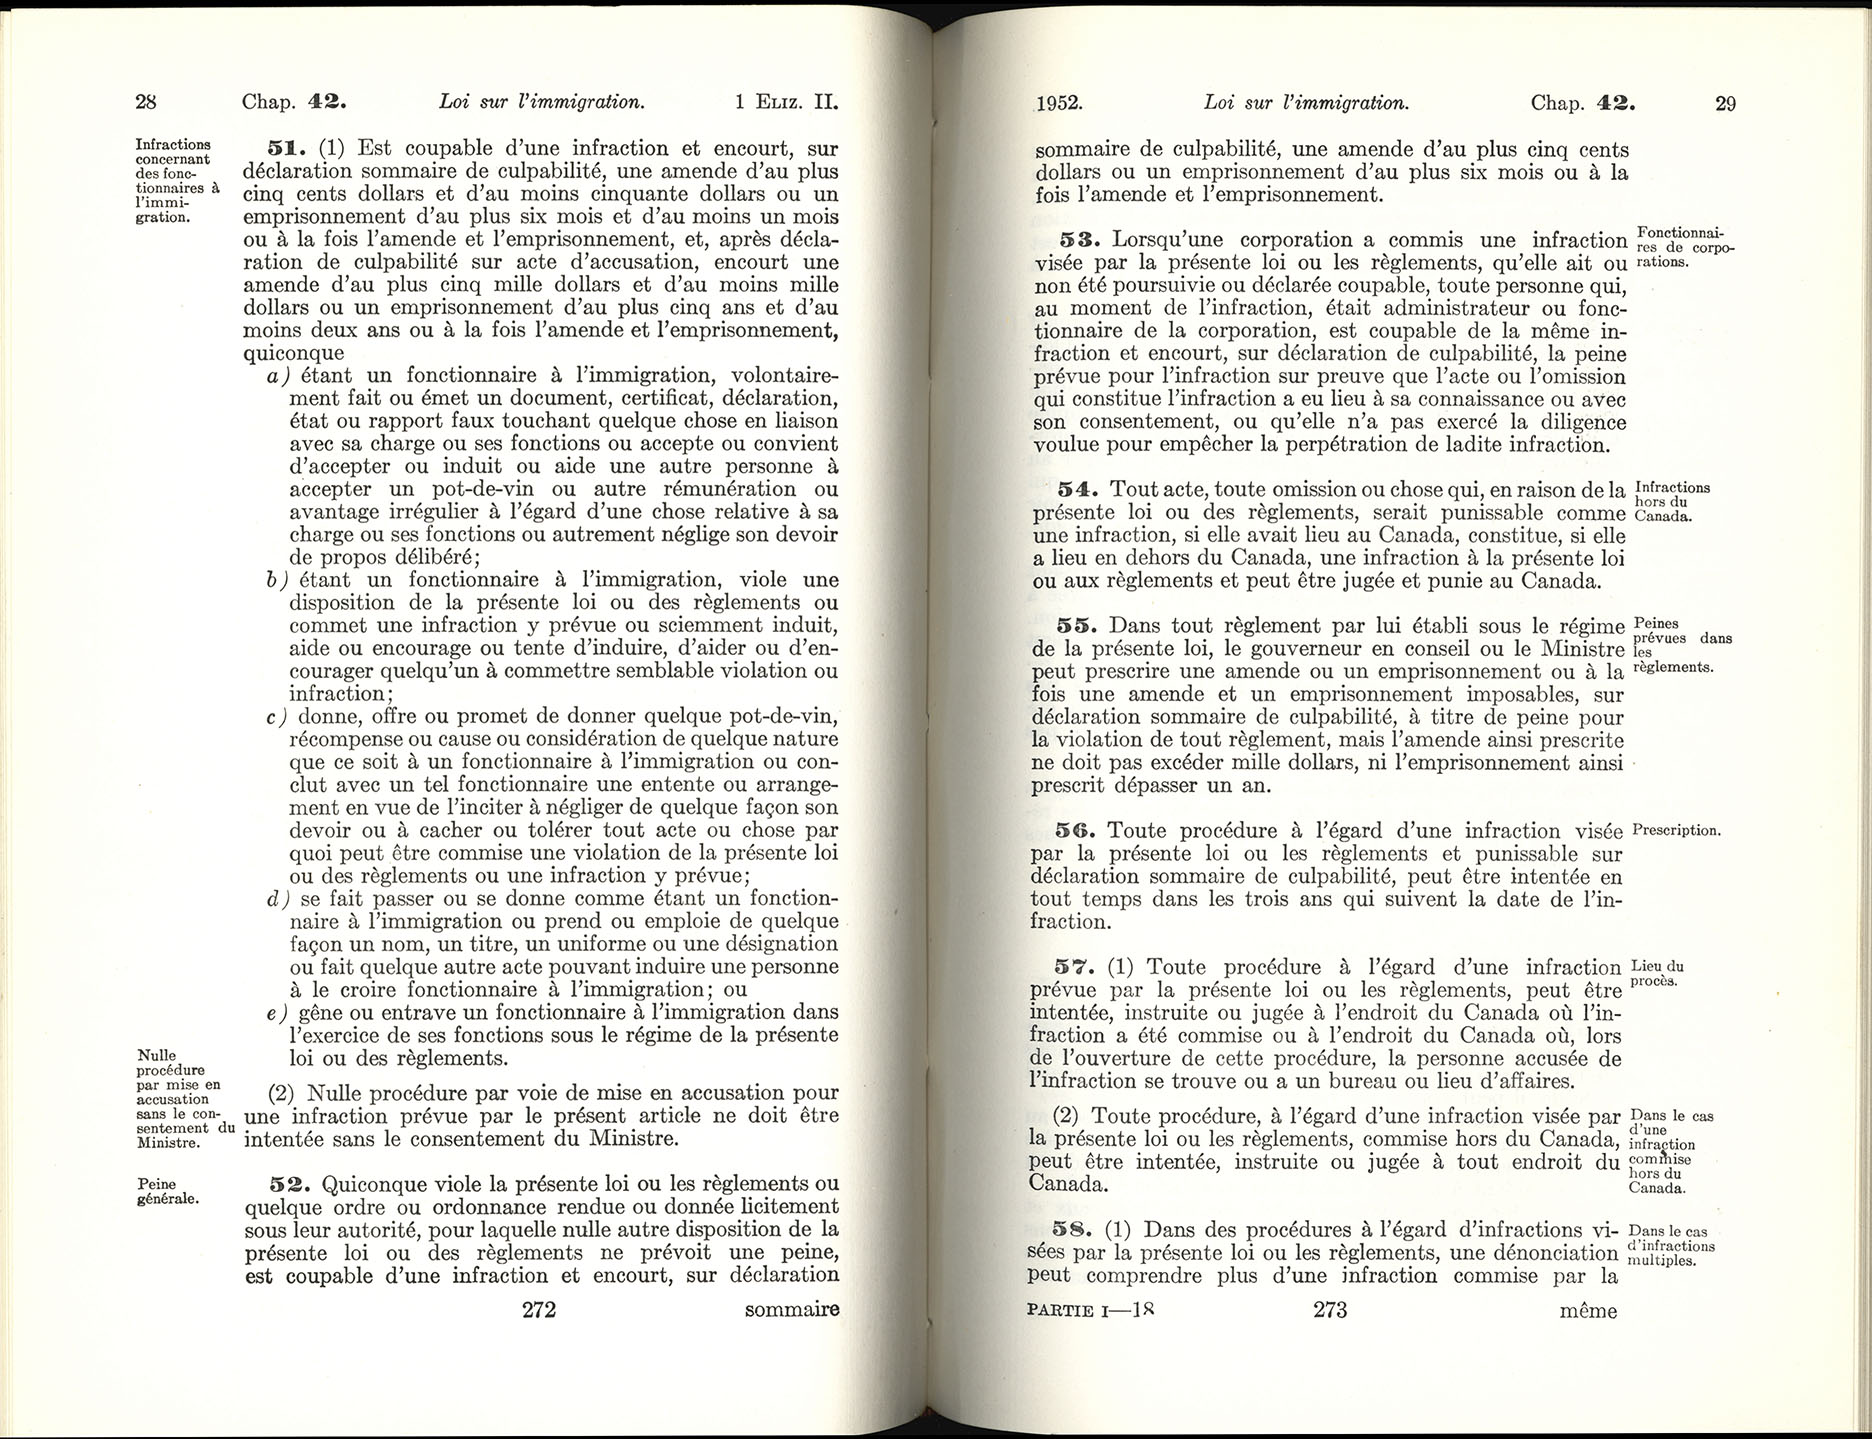 Chap 42 Page 272, 273 Loi sur l’immigration, 1952